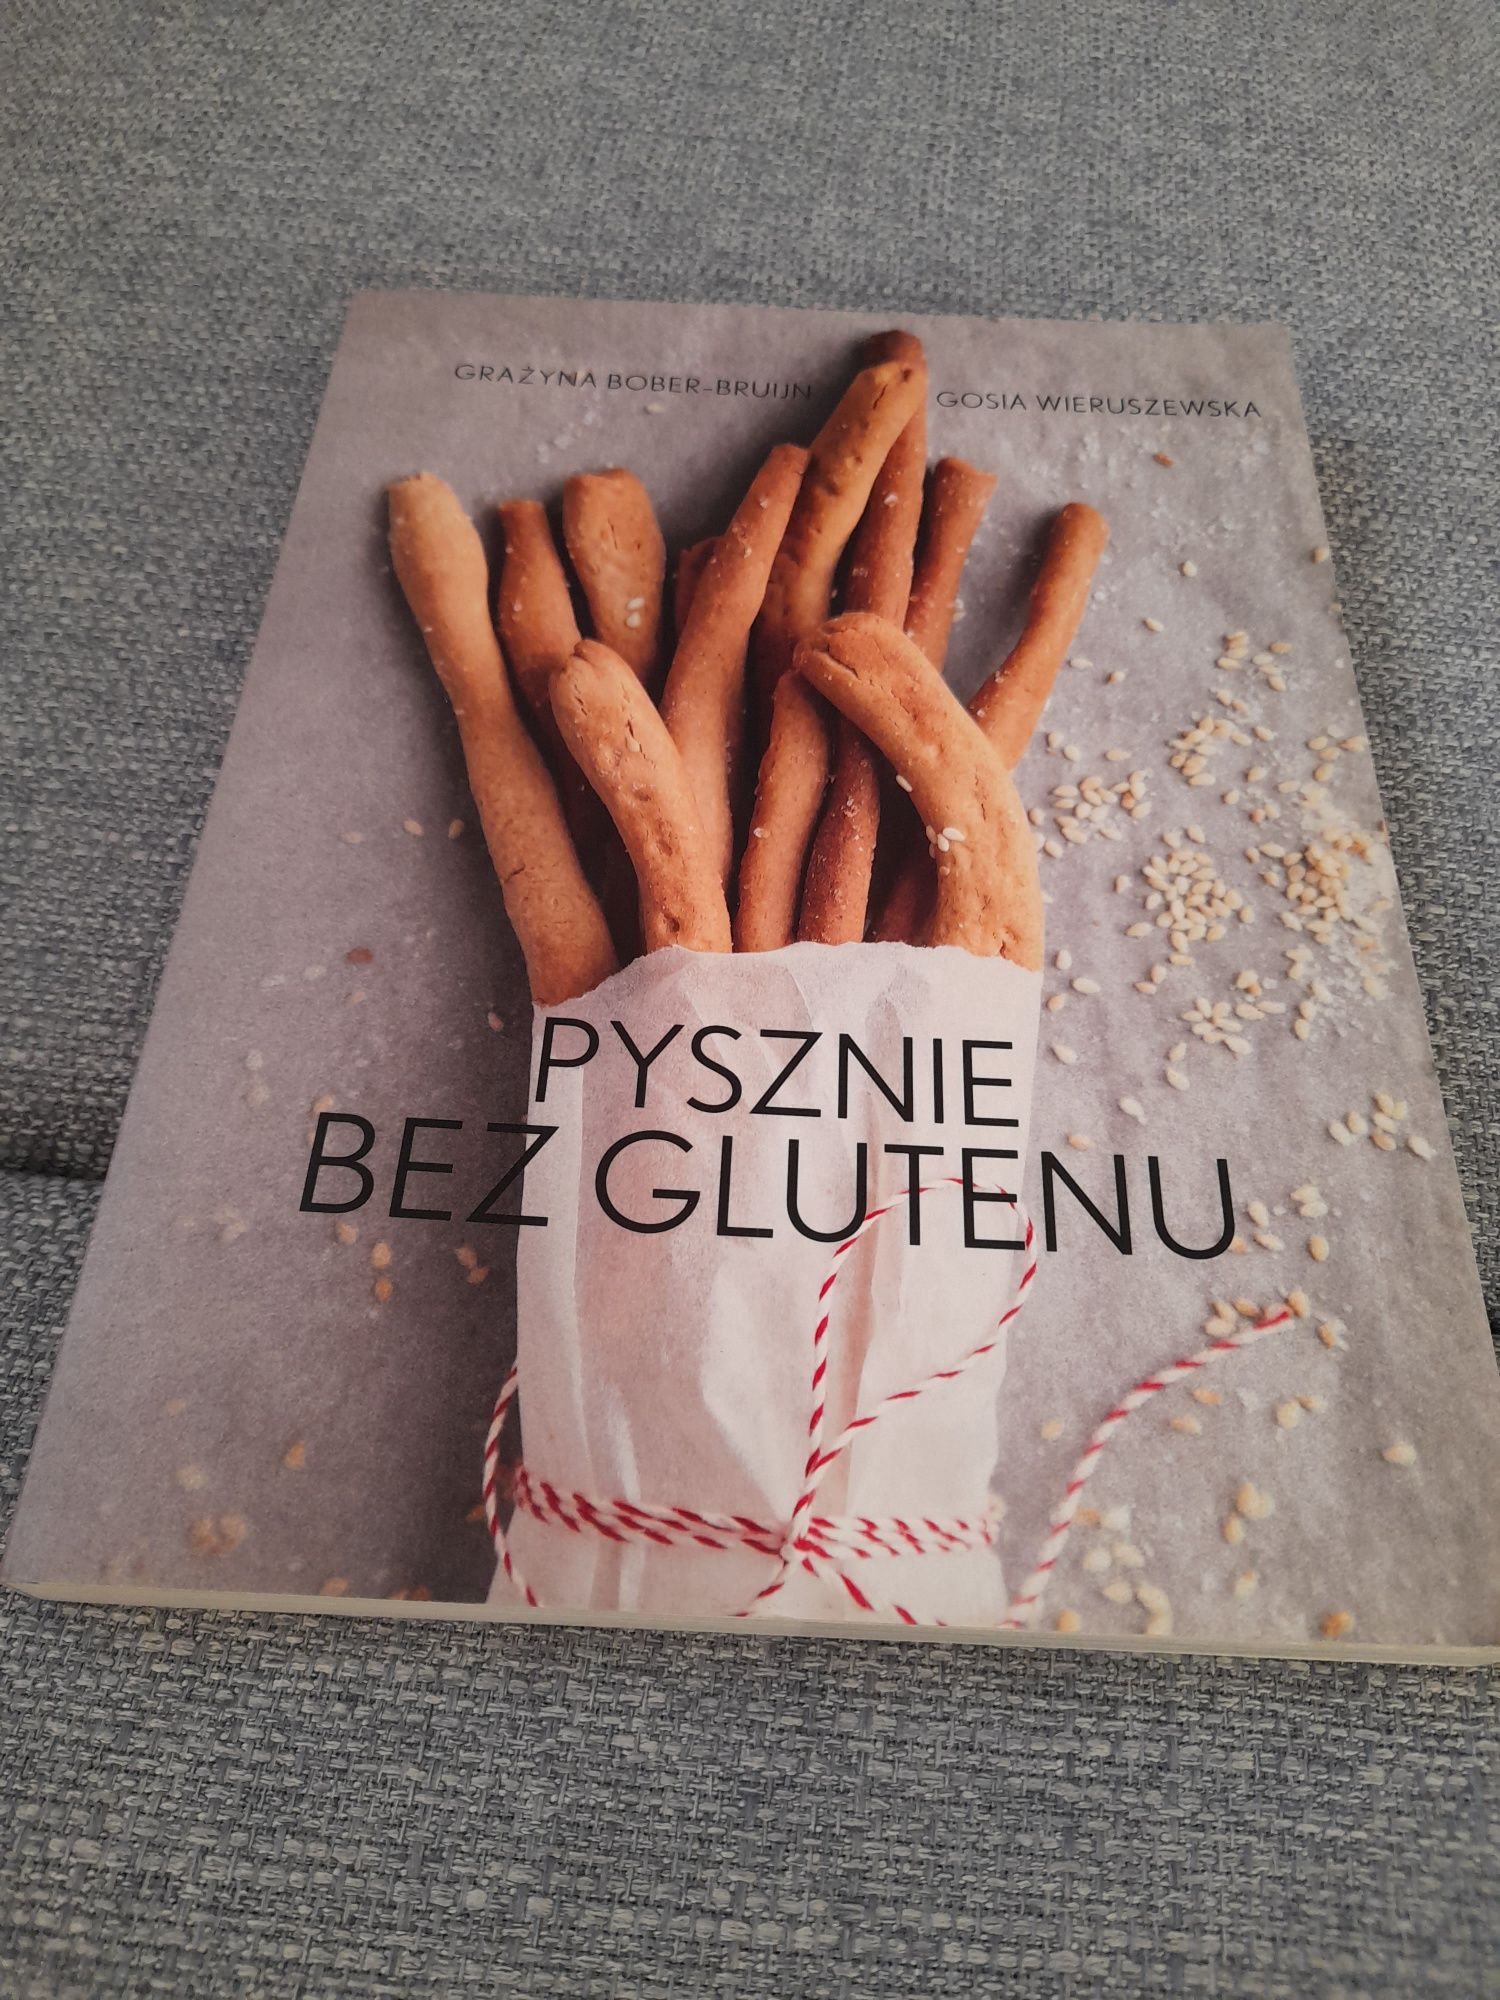 Książka "Pysznie bez glutenu" Grażyna Bober-Bruijn